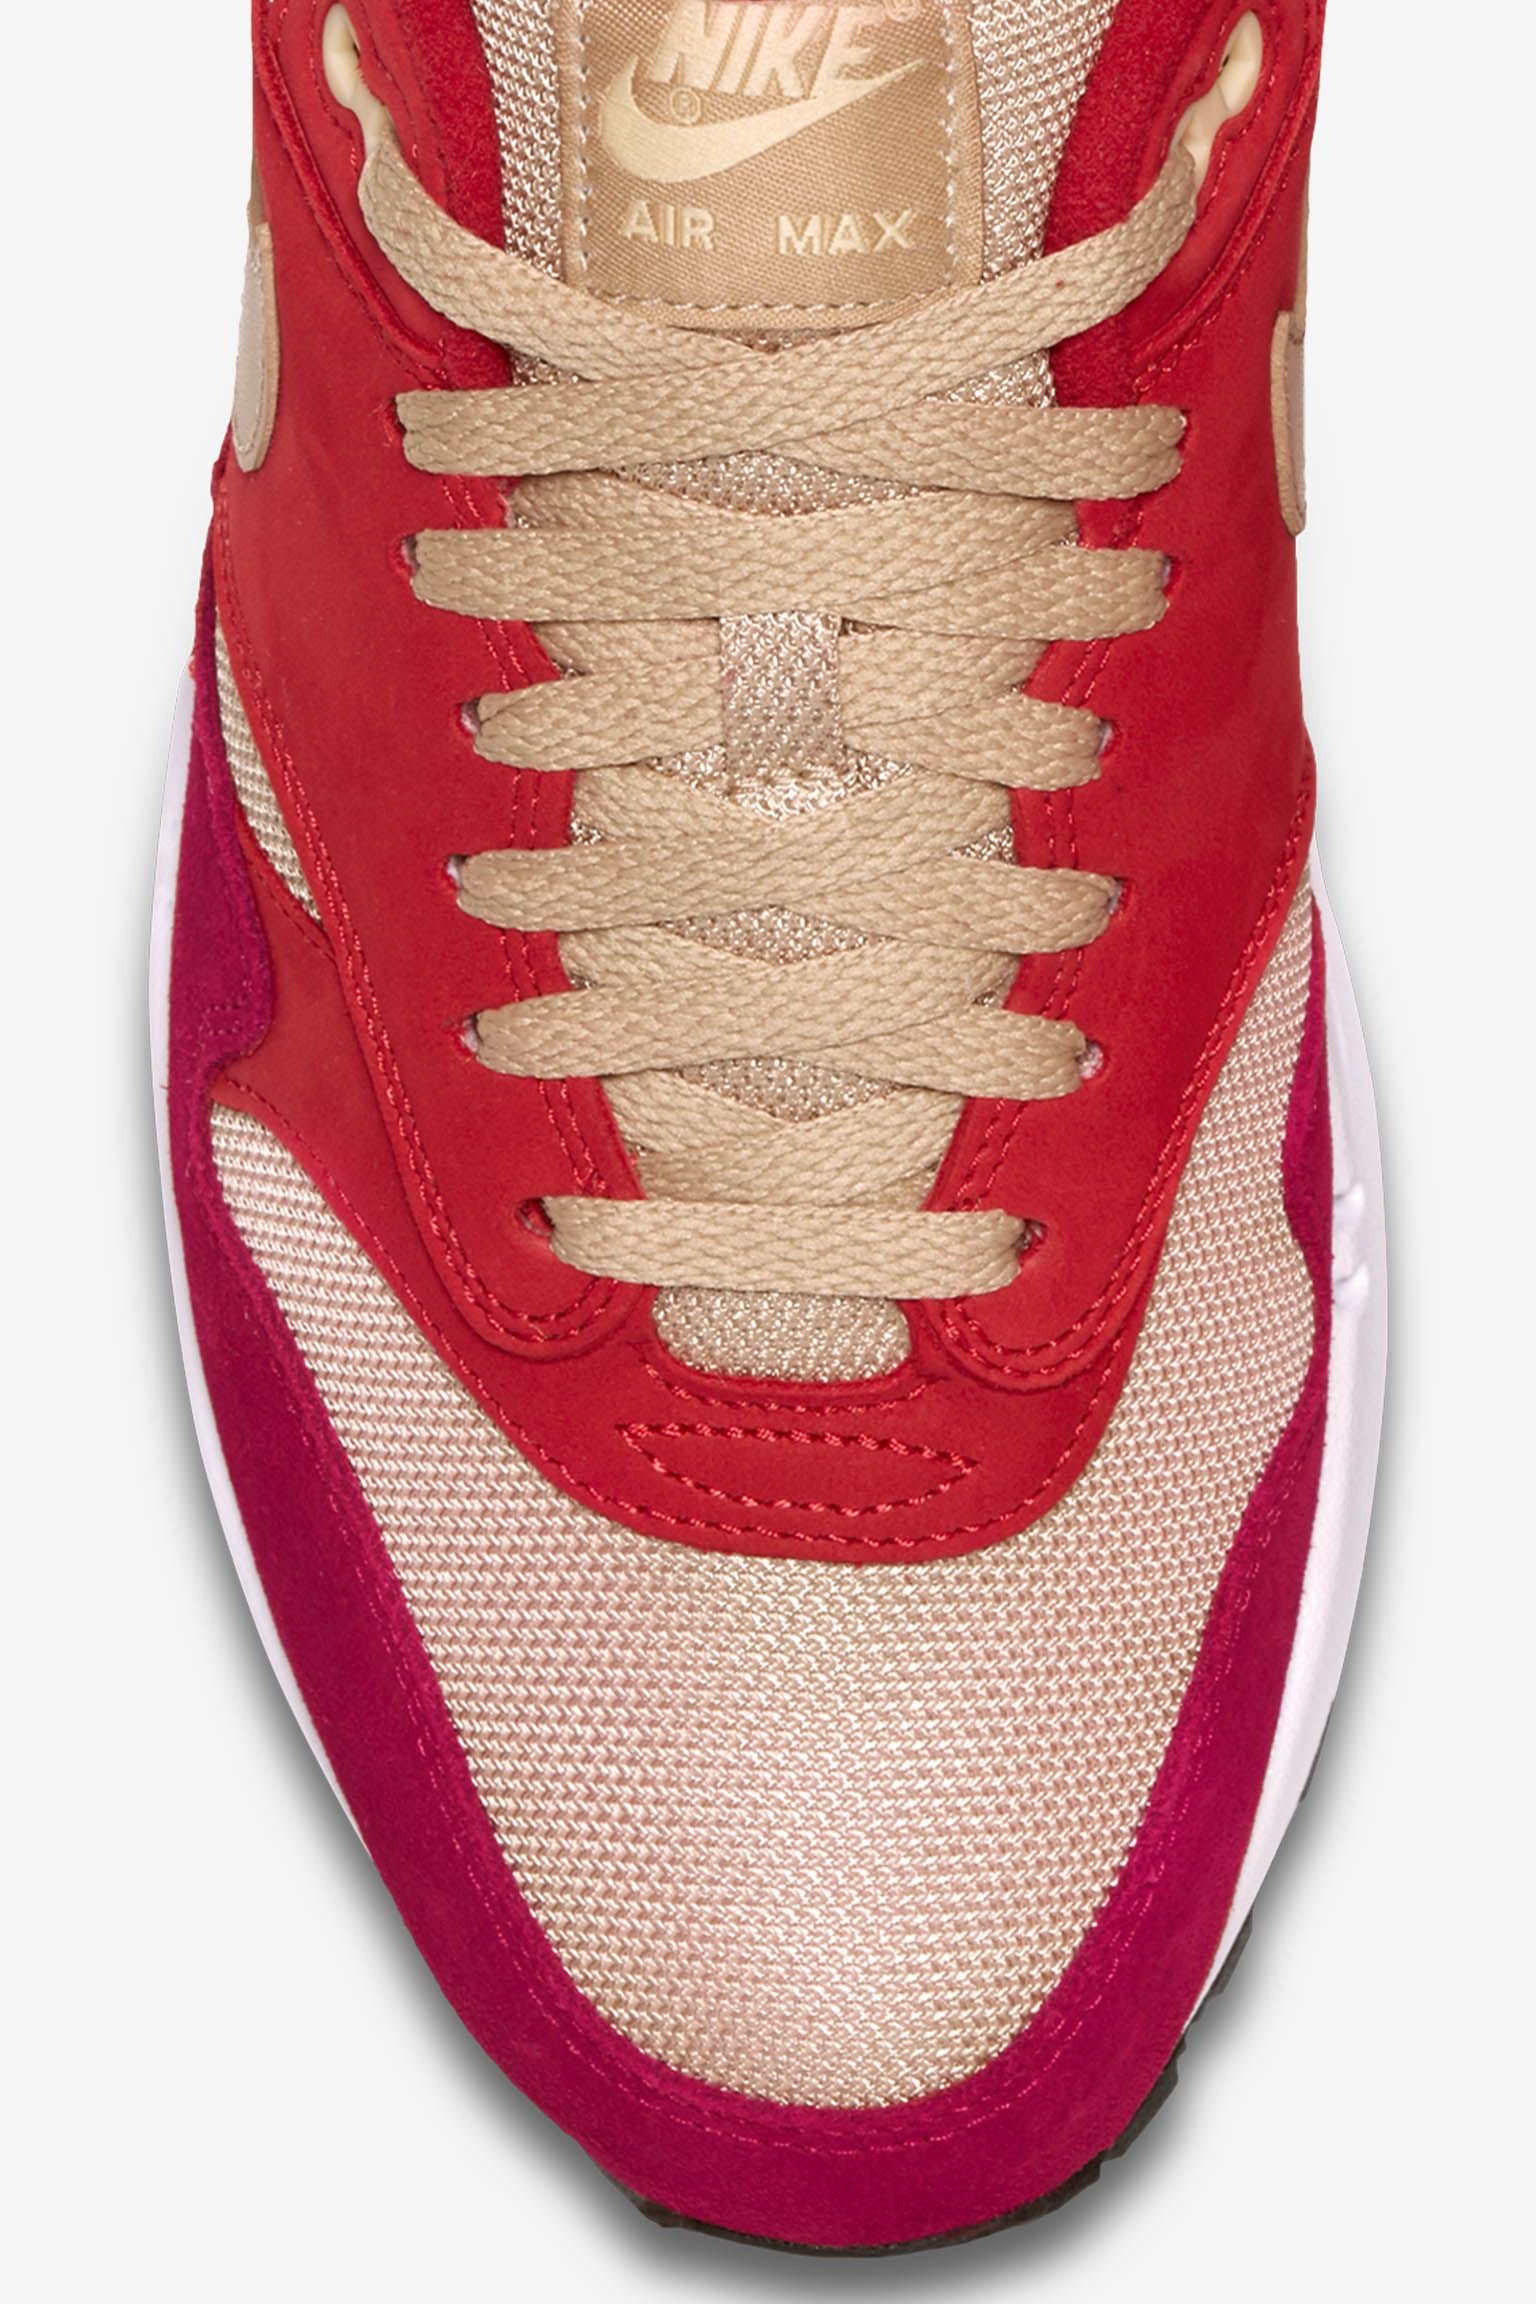 Nike Air Max 1 Premium Retro